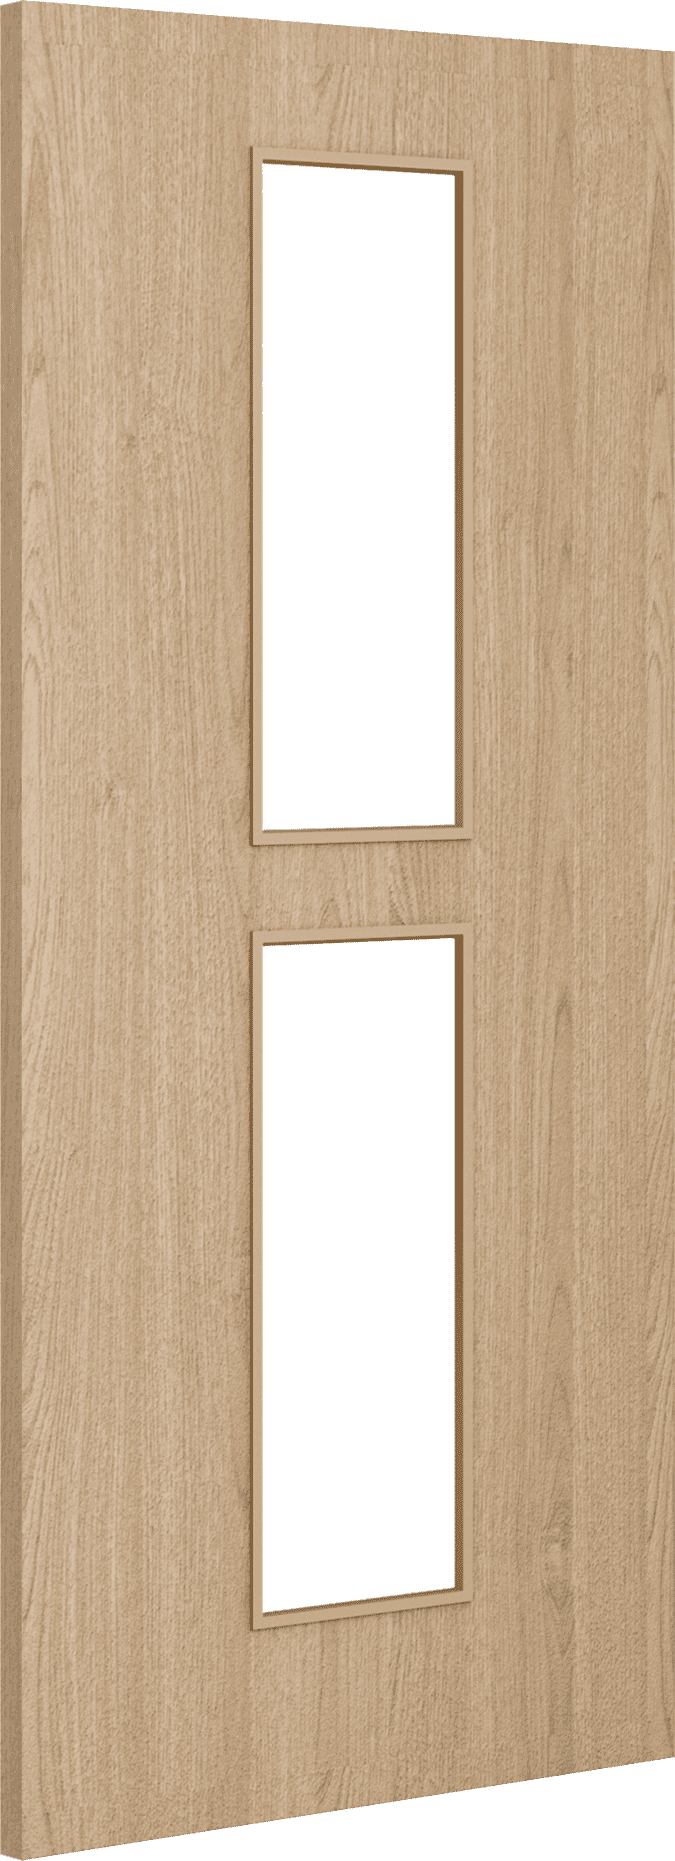 2040mm x 826mm x 54mm Architectural Oak 12 Clear Glazed - Prefinished FD60 Fire Door Blank